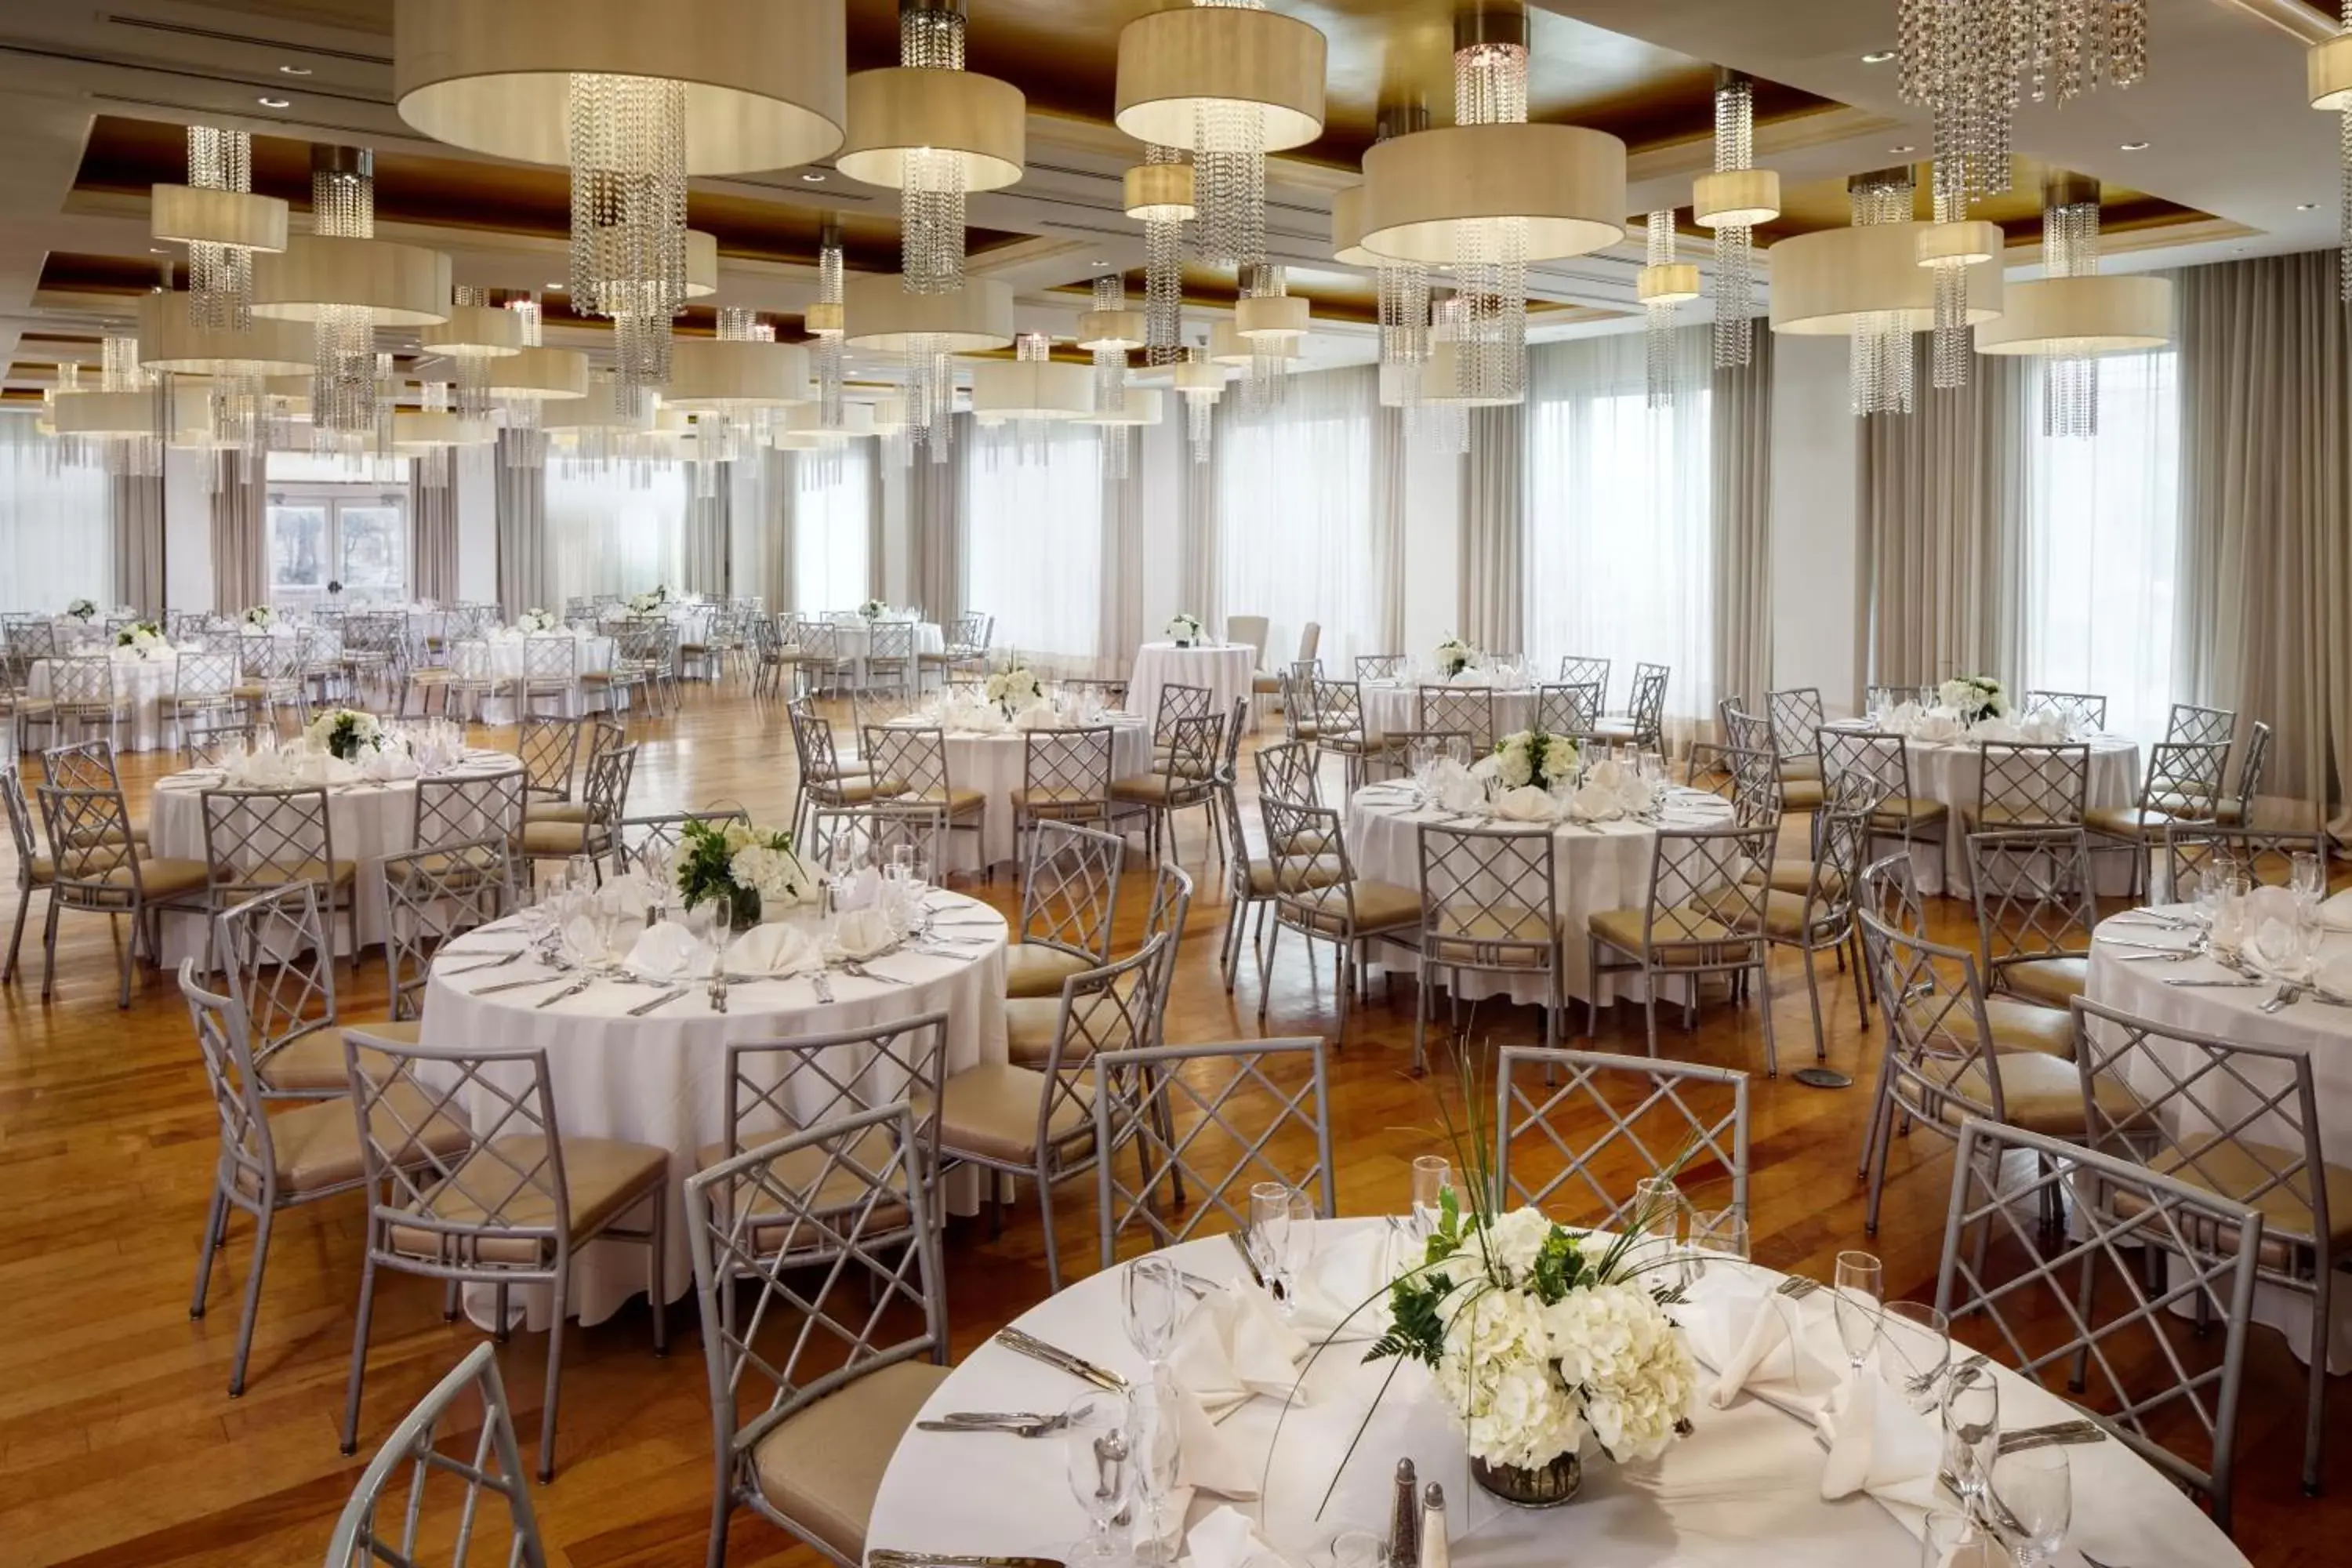 Banquet/Function facilities, Banquet Facilities in Allegria Hotel